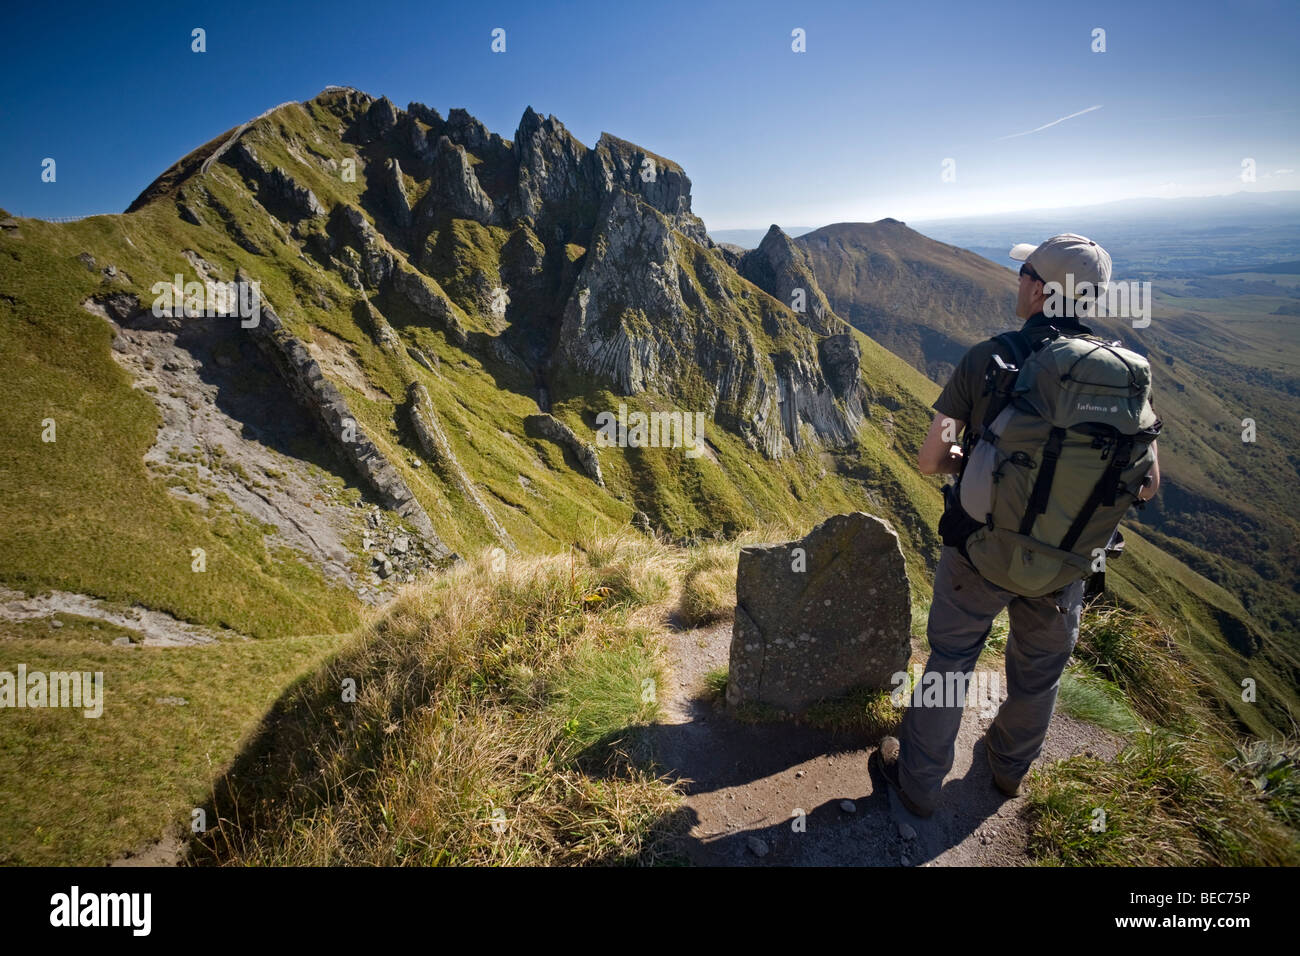 Ein Wanderer vor "Puy de Sancy" oben (Puy de Dôme - Frankreich). Randonneur Devant le Sommet du Puy de Sancy. Stockfoto